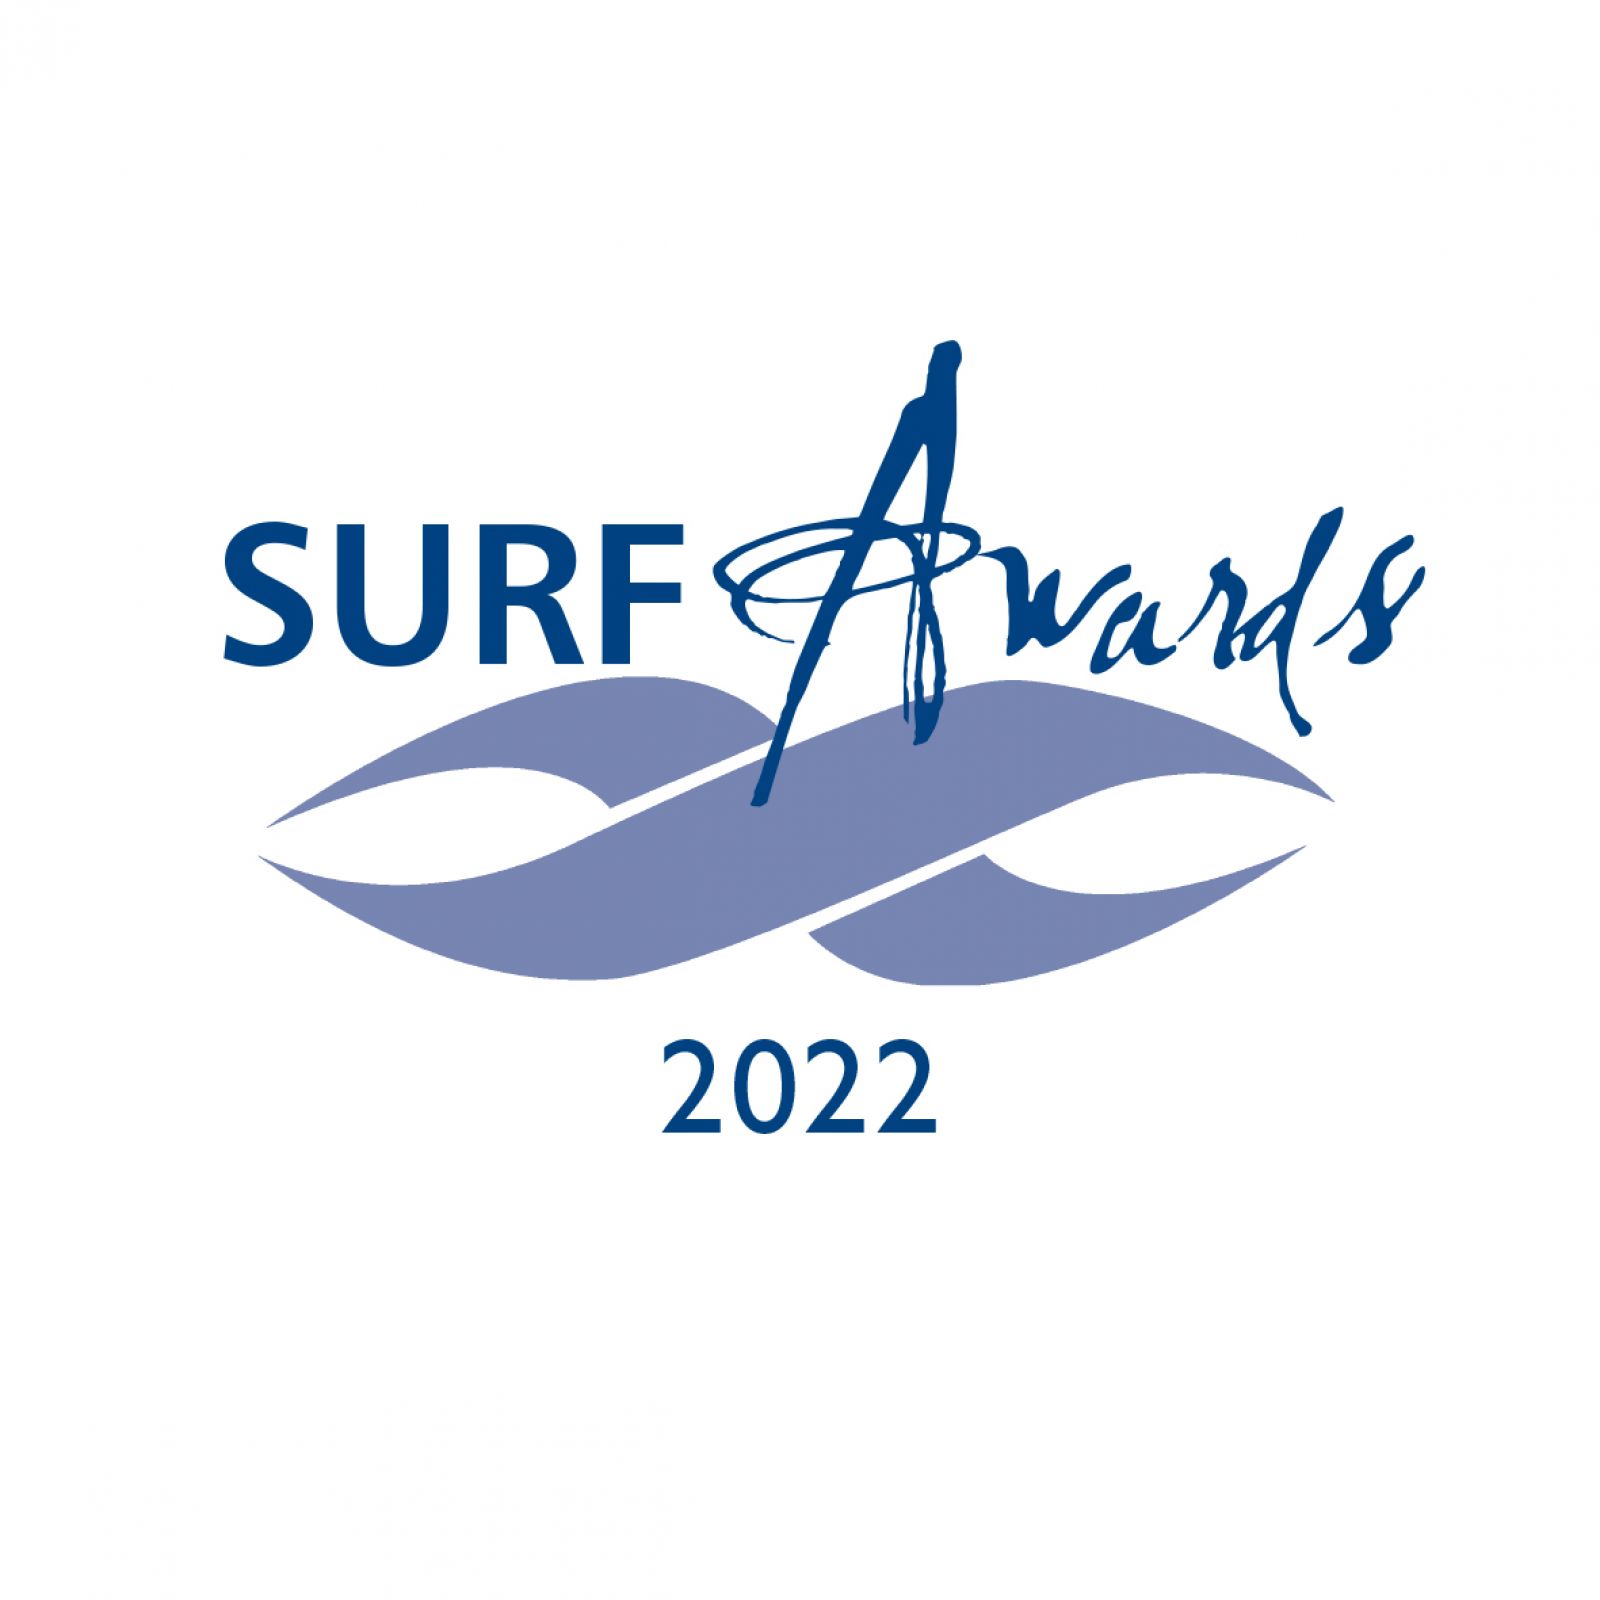 Surf Awards logo banner image